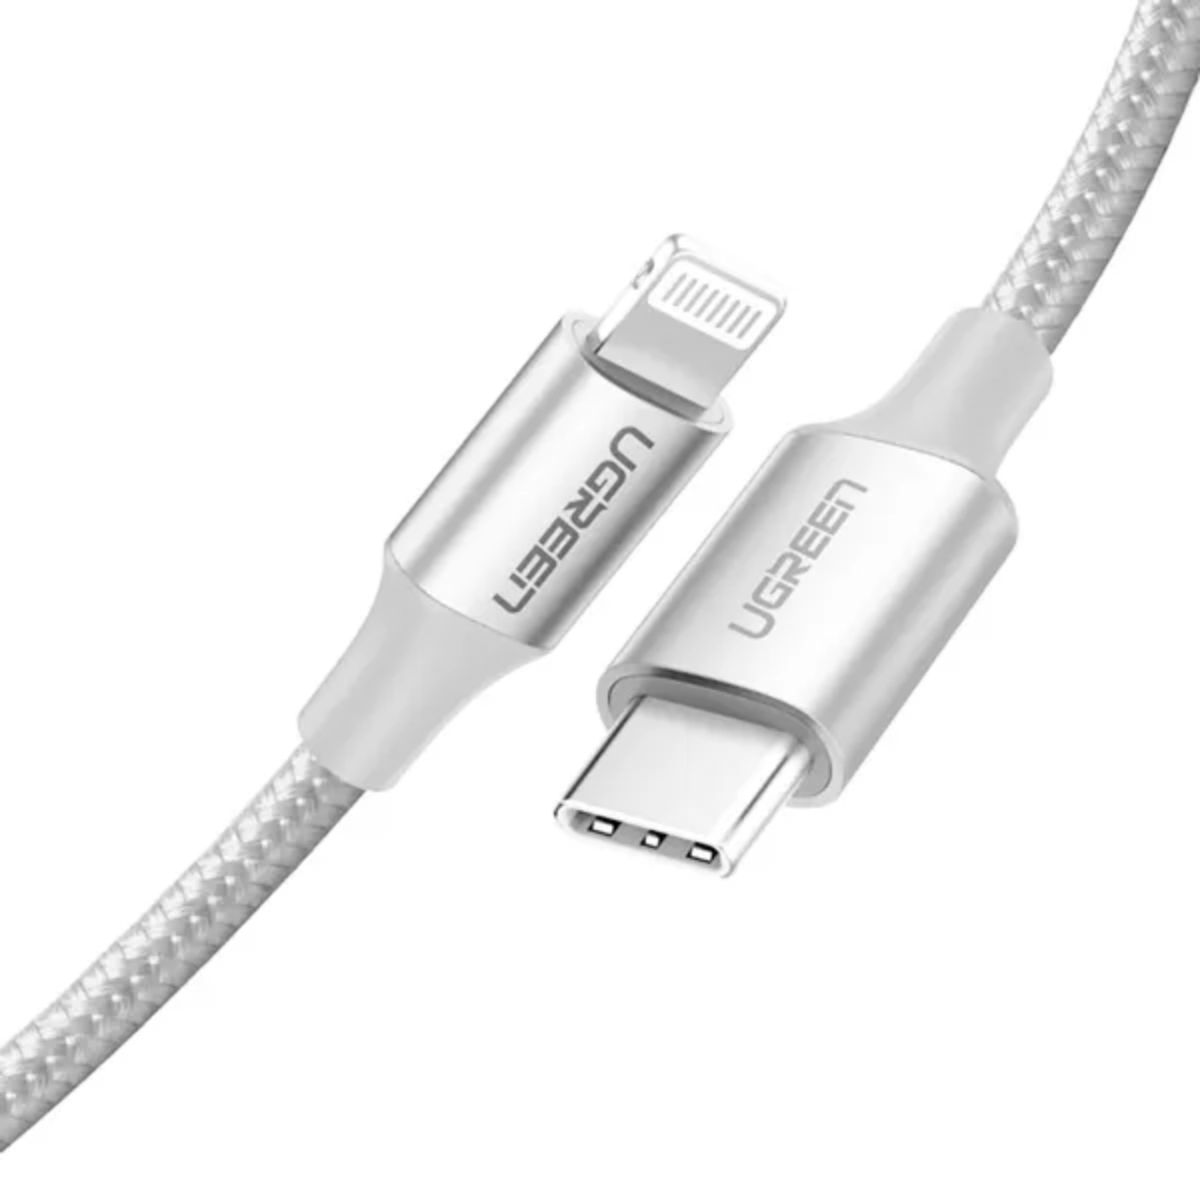 Cáp sạc dài 1,5m USB-C to Lightning Ugreen 70524 US304 màu bạc, vỏ nhôm, hỗ trợ sạc nhanh 3A